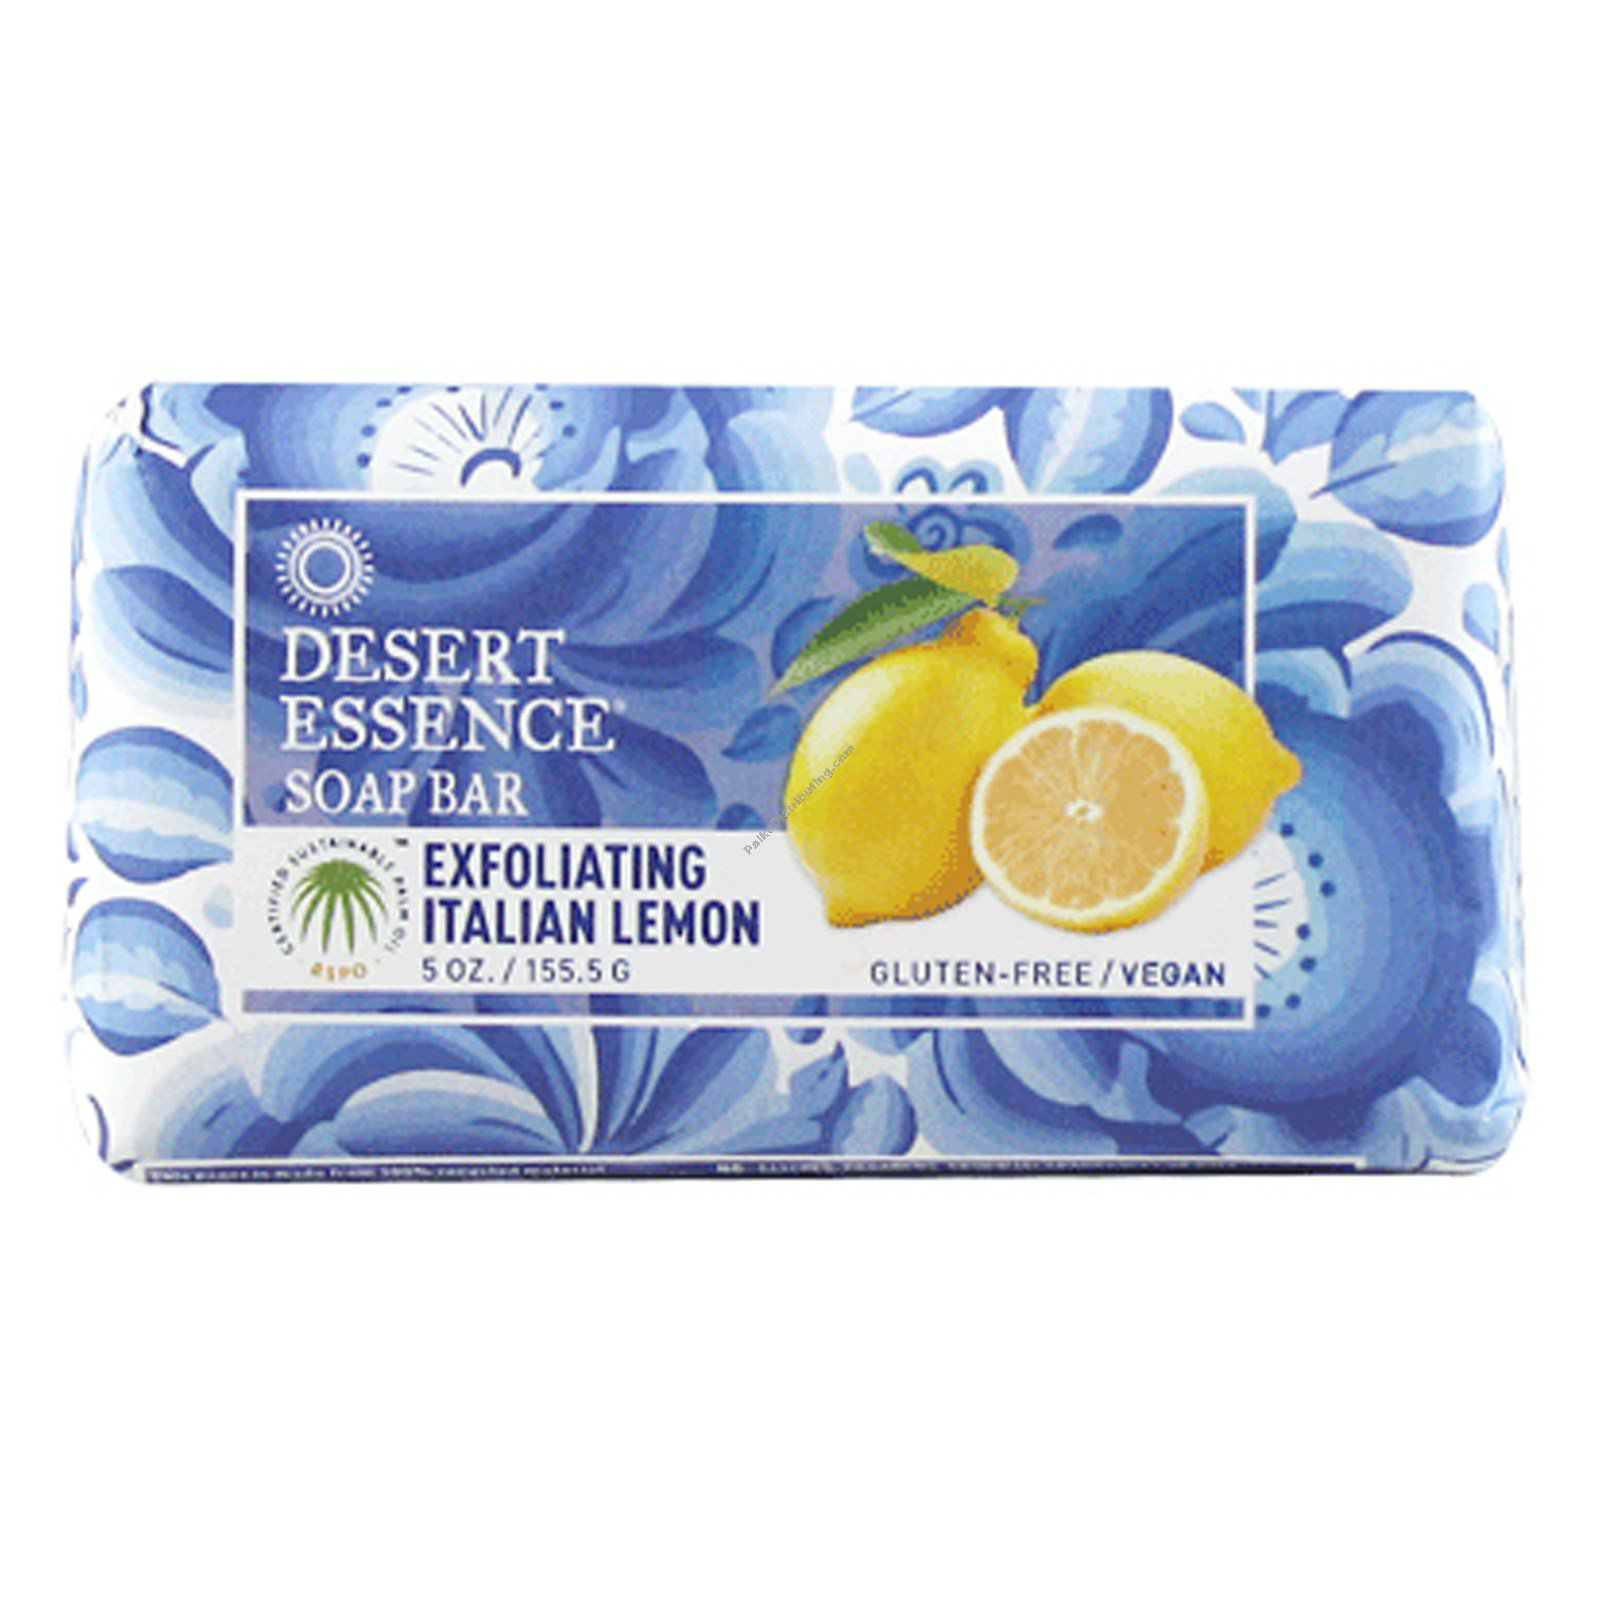 Product Image: Exfoliating Italian Lemon Bar Soap